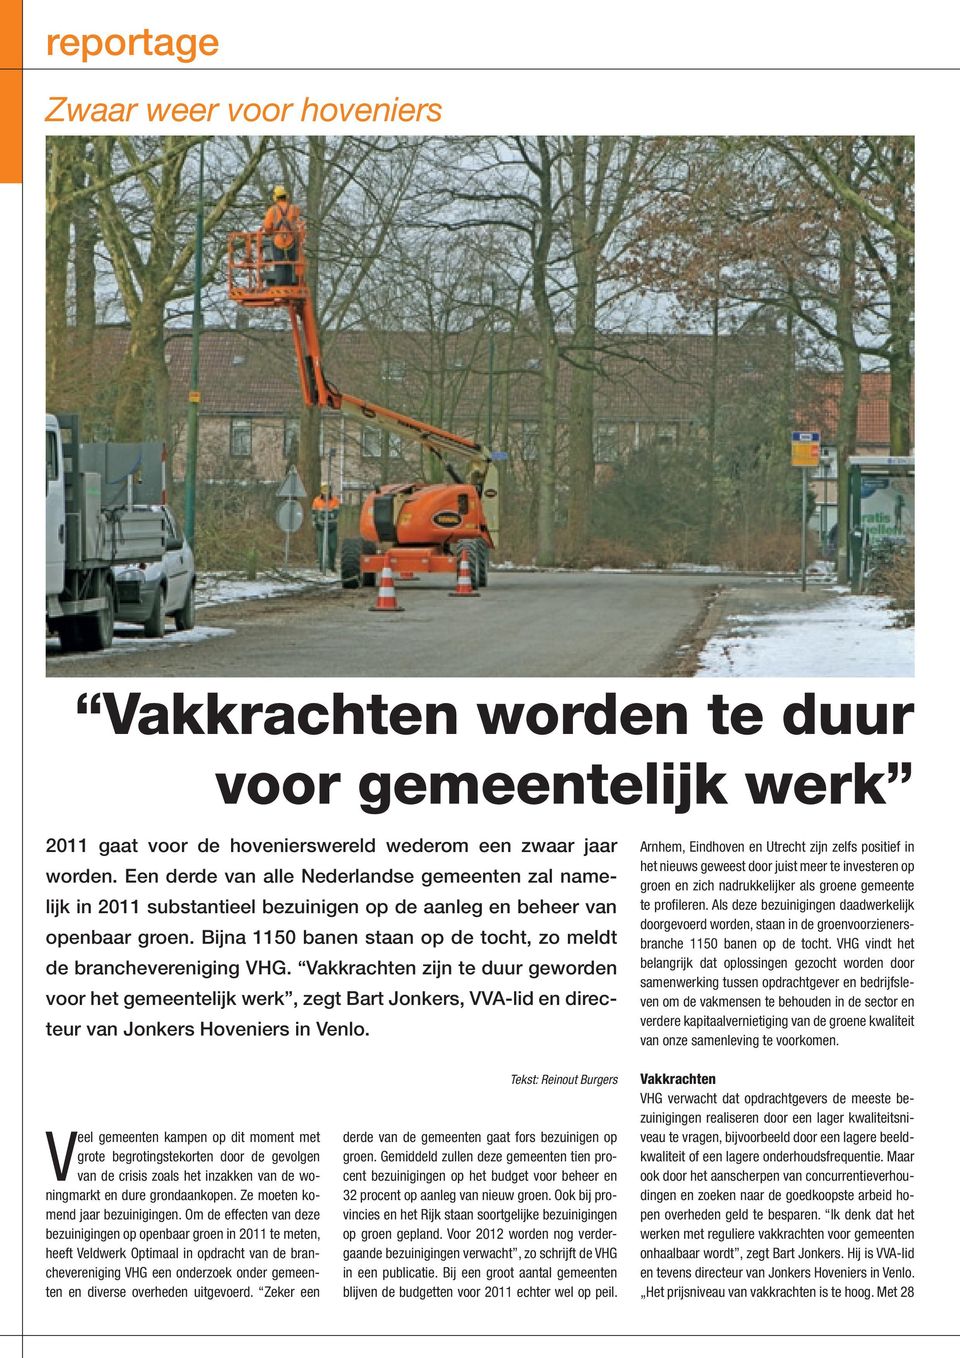 Vakkrachten zijn te duur geworden voor het gemeentelijk werk, zegt Bart Jonkers, VVA-lid en directeur van Jonkers Hoveniers in Venlo.